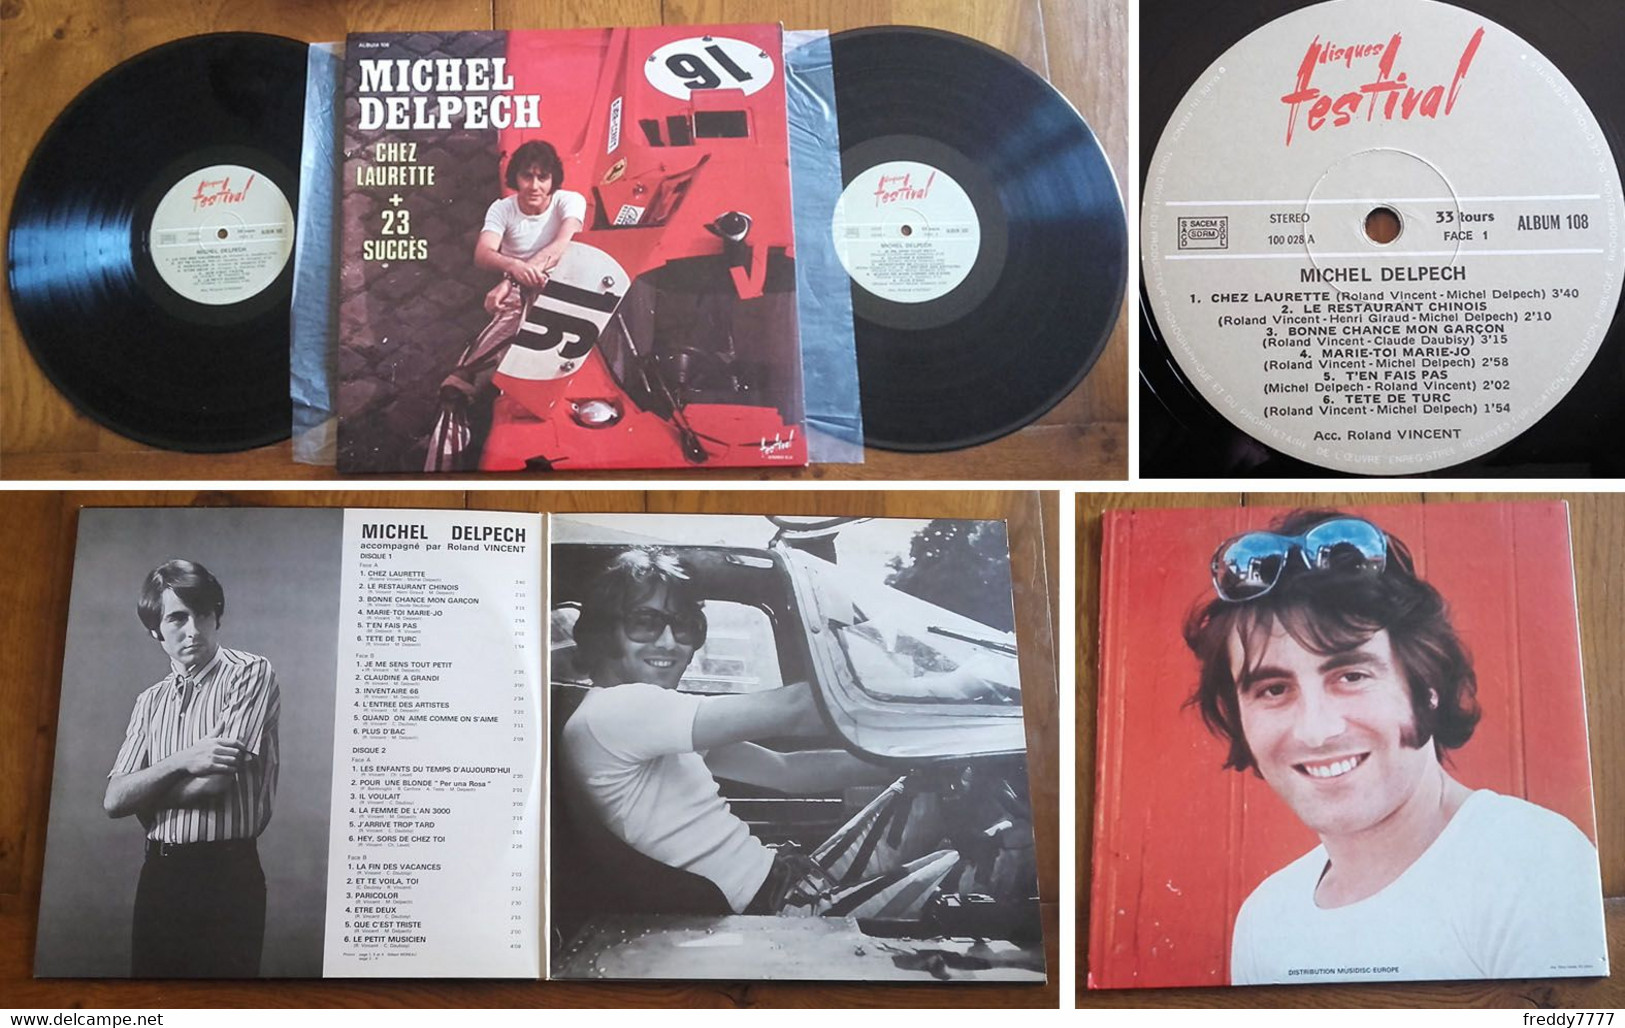 RARE French DOUBLE LP 33t RPM (12") MICHEL DELPECH (Gatefold P/s, 1974) - Verzameluitgaven